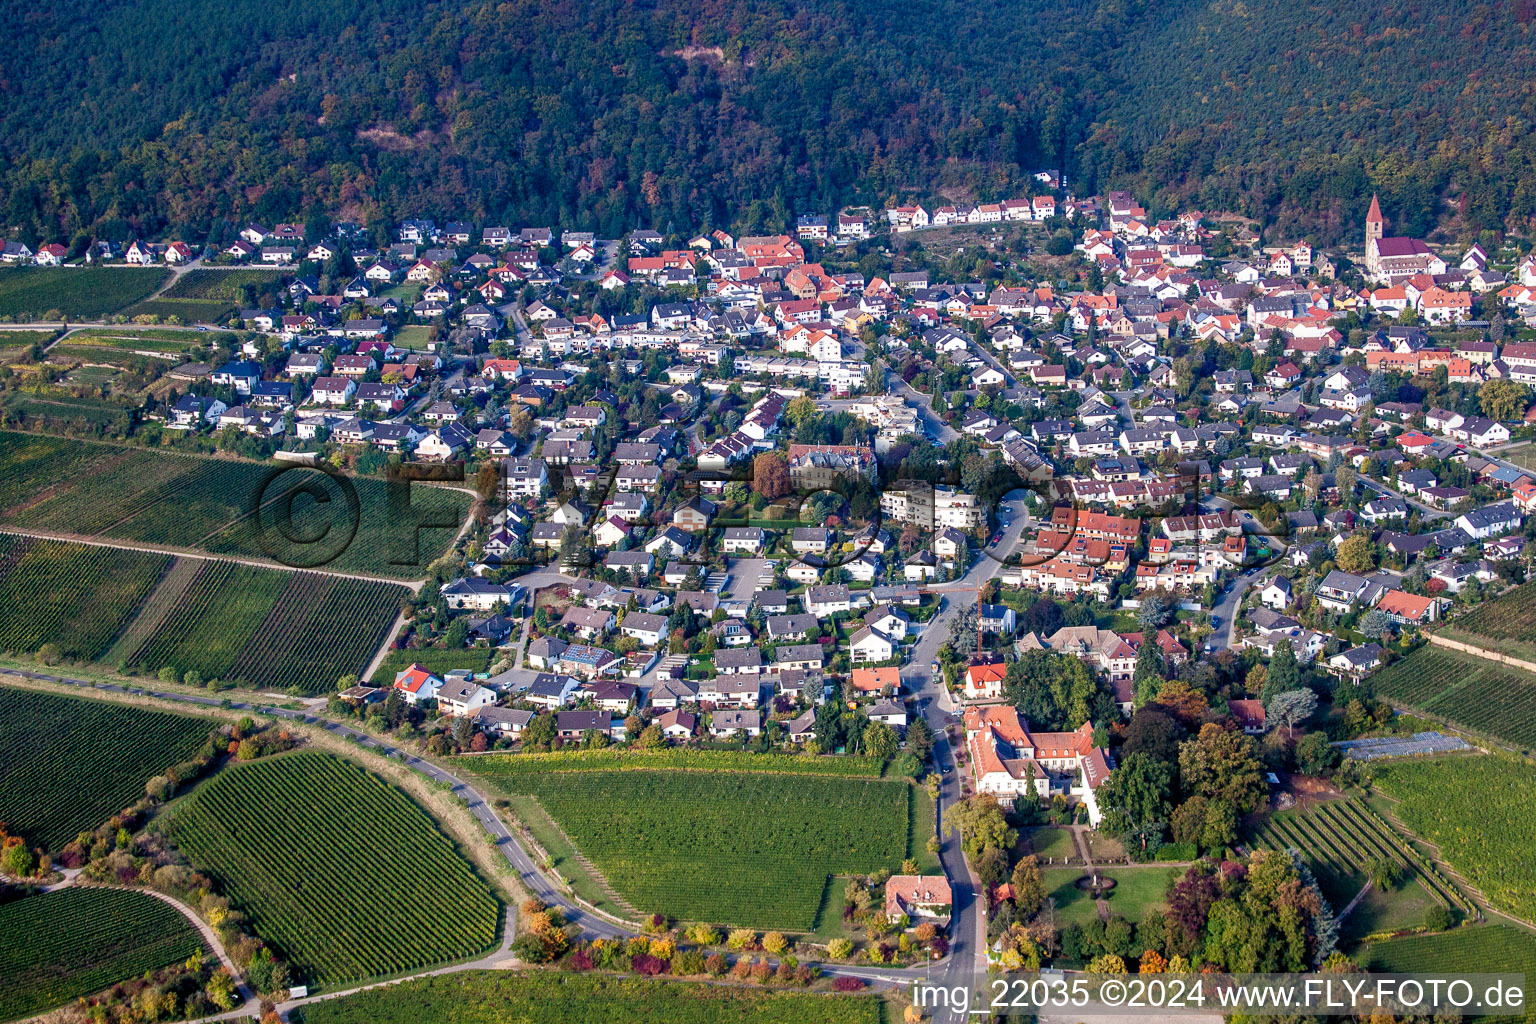 Luftbild von Dorf - Ansicht am Rande von Weinbergen am Haardtrand des Pfälzerwaldes von Ortsteil Königsbach in Neustadt an der Weinstraße im Bundesland Rheinland-Pfalz, Deutschland